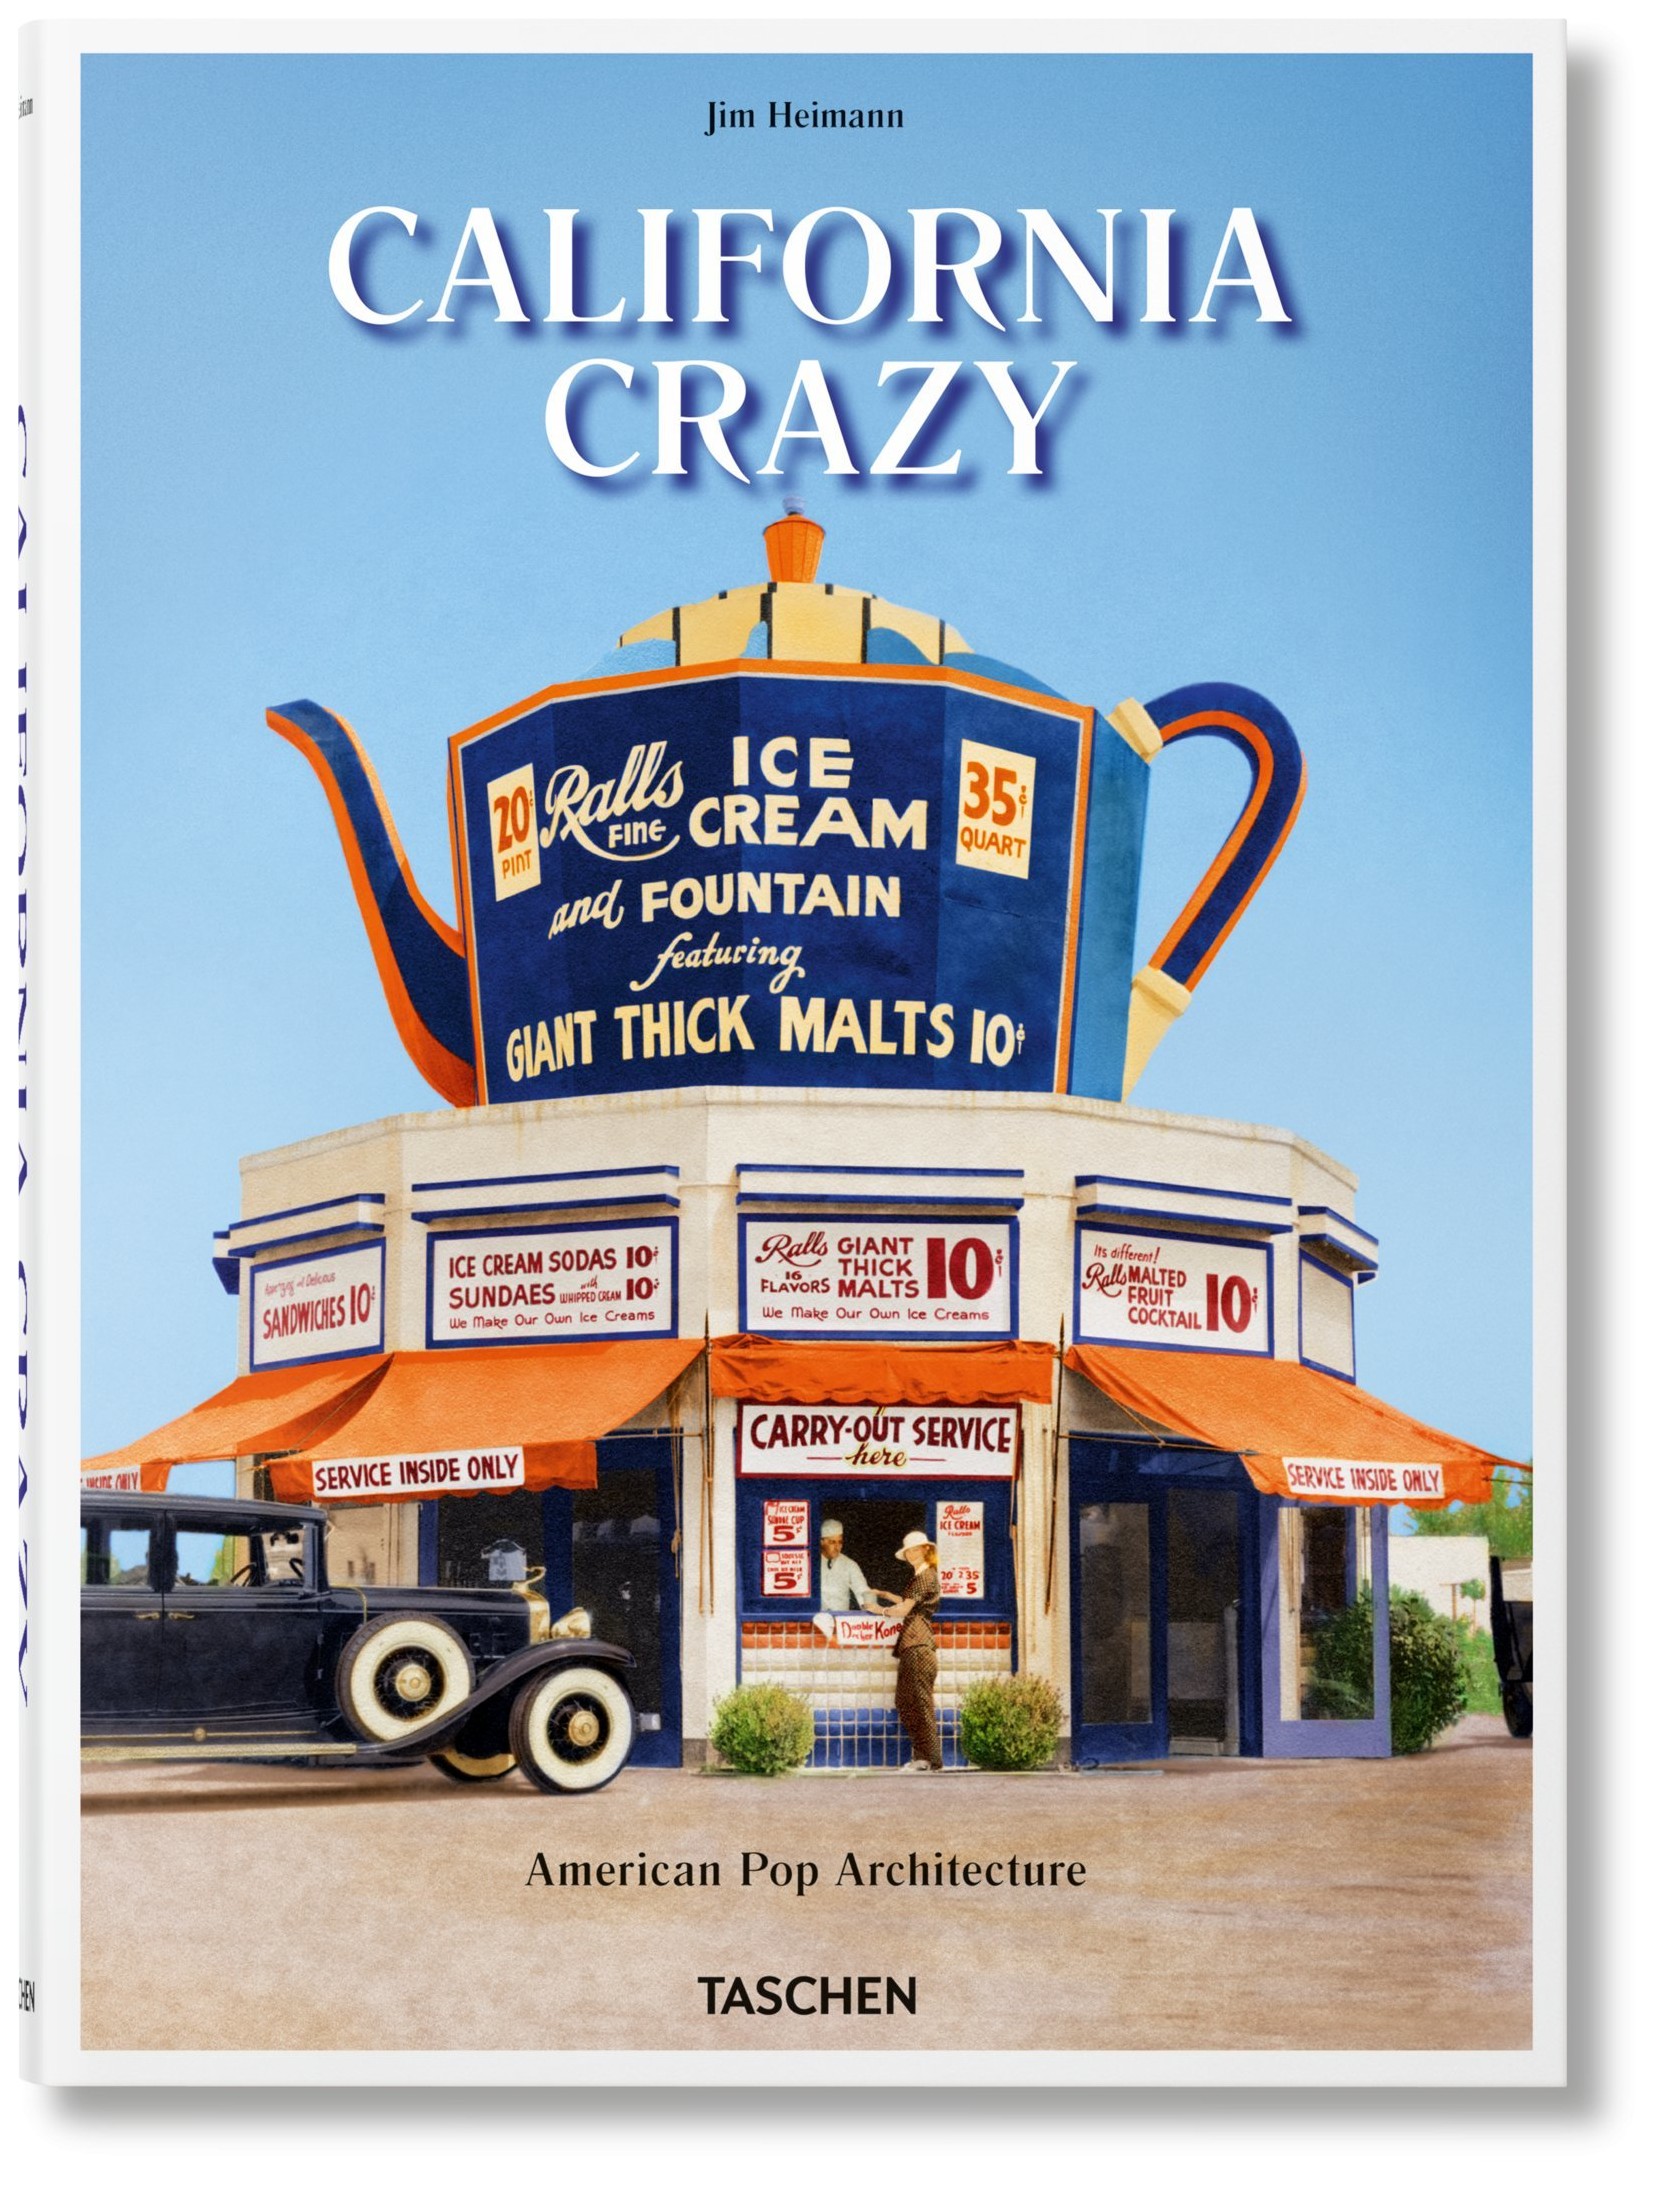 Jim Heimann - California Crazy